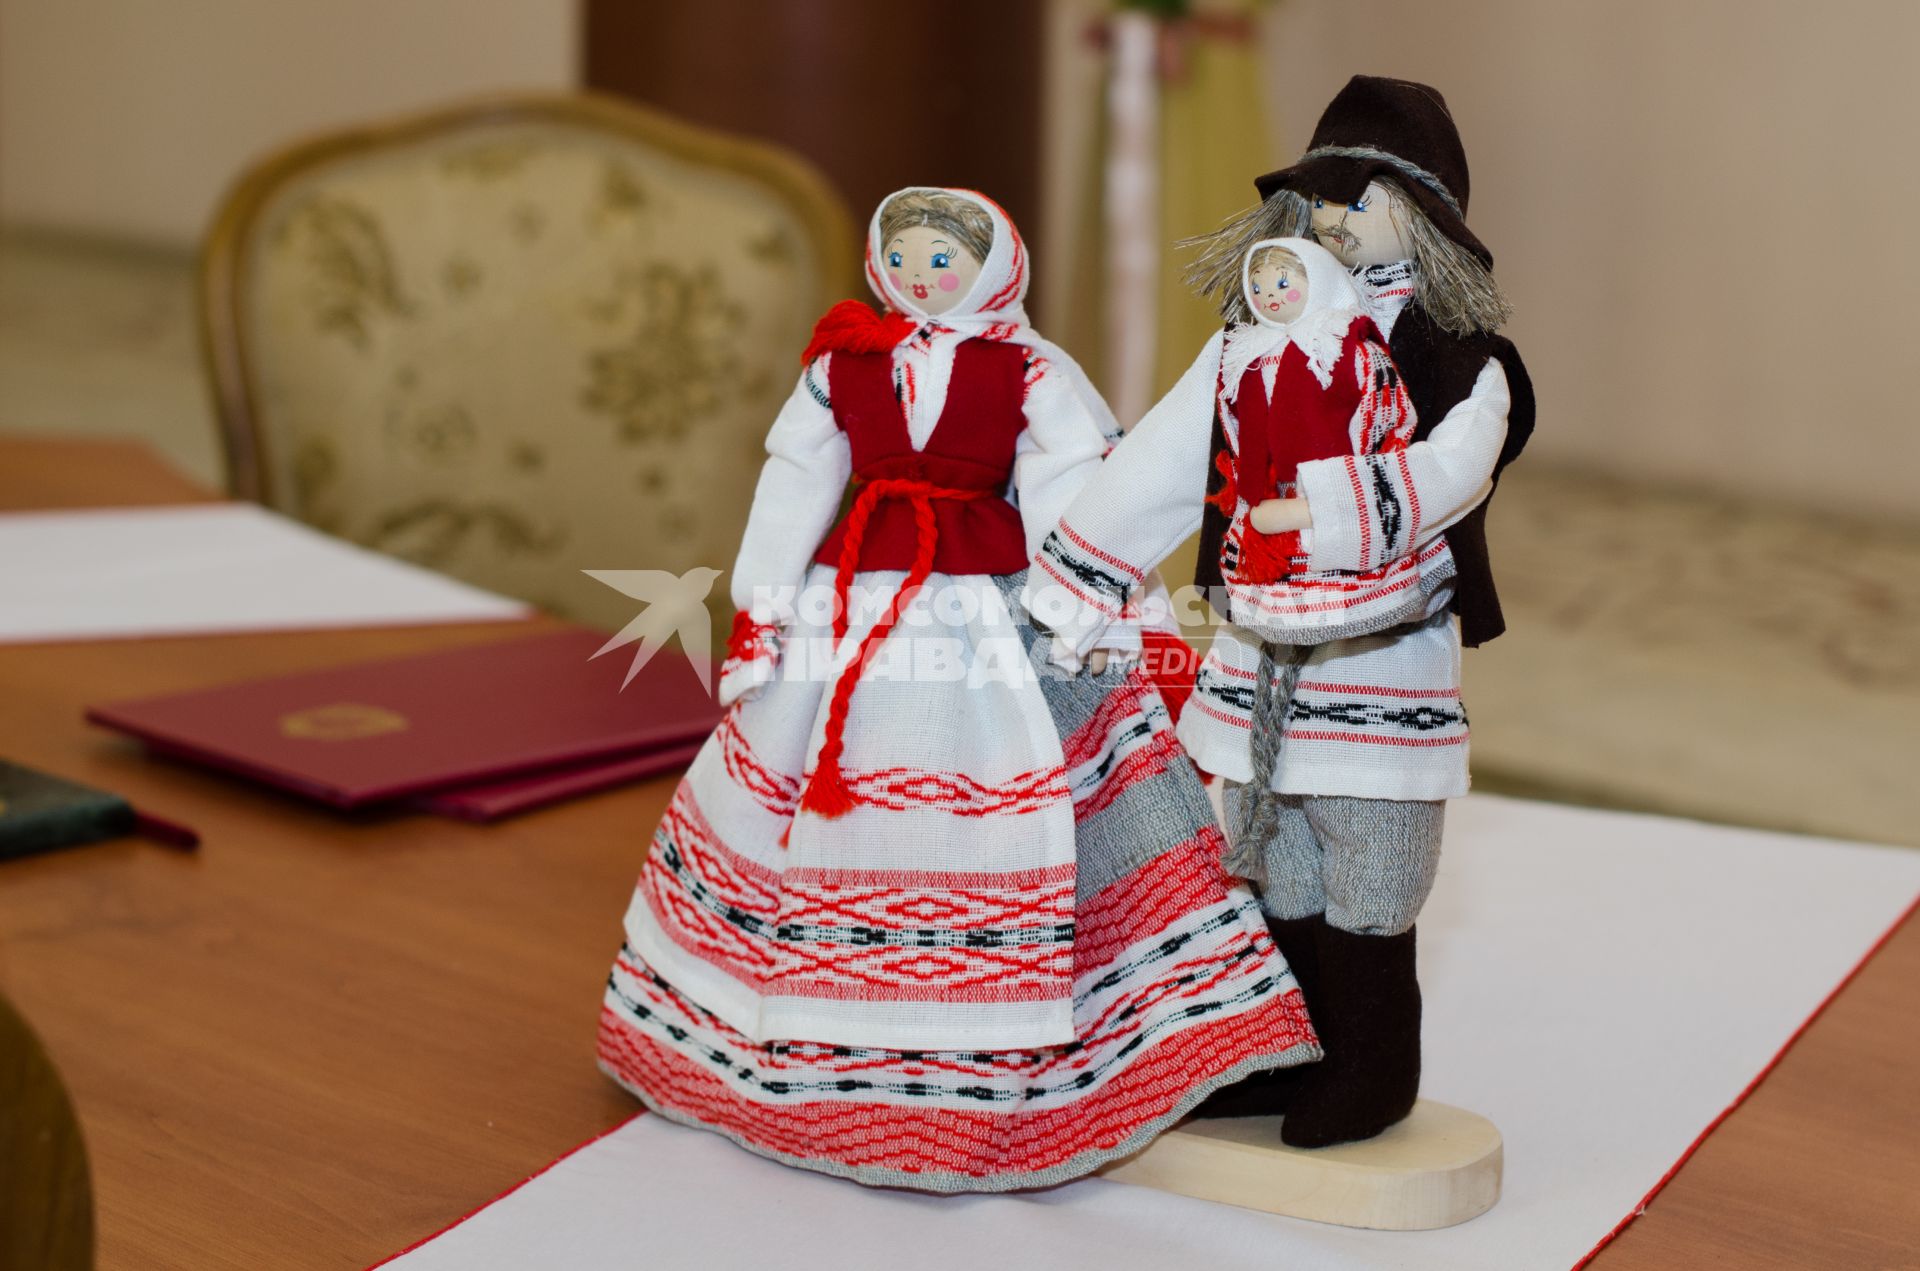 Самара. Куклы в национальном белорусском костюме в Доме Дружбы народов.